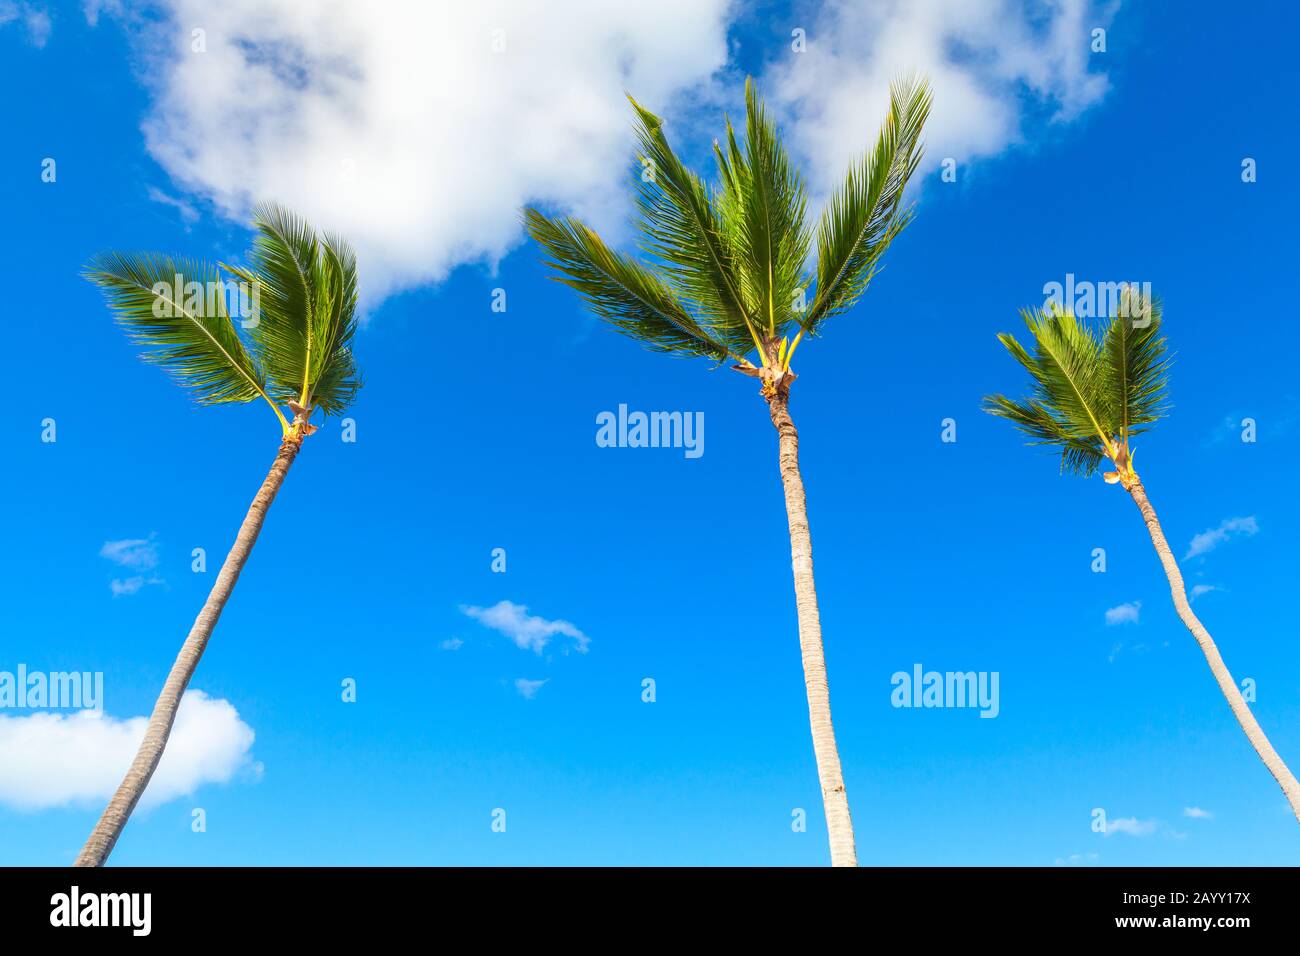 Drei Palmen stehen unter blauem bewölktem Himmel, Natur der Dominikanischen republik Stockfoto